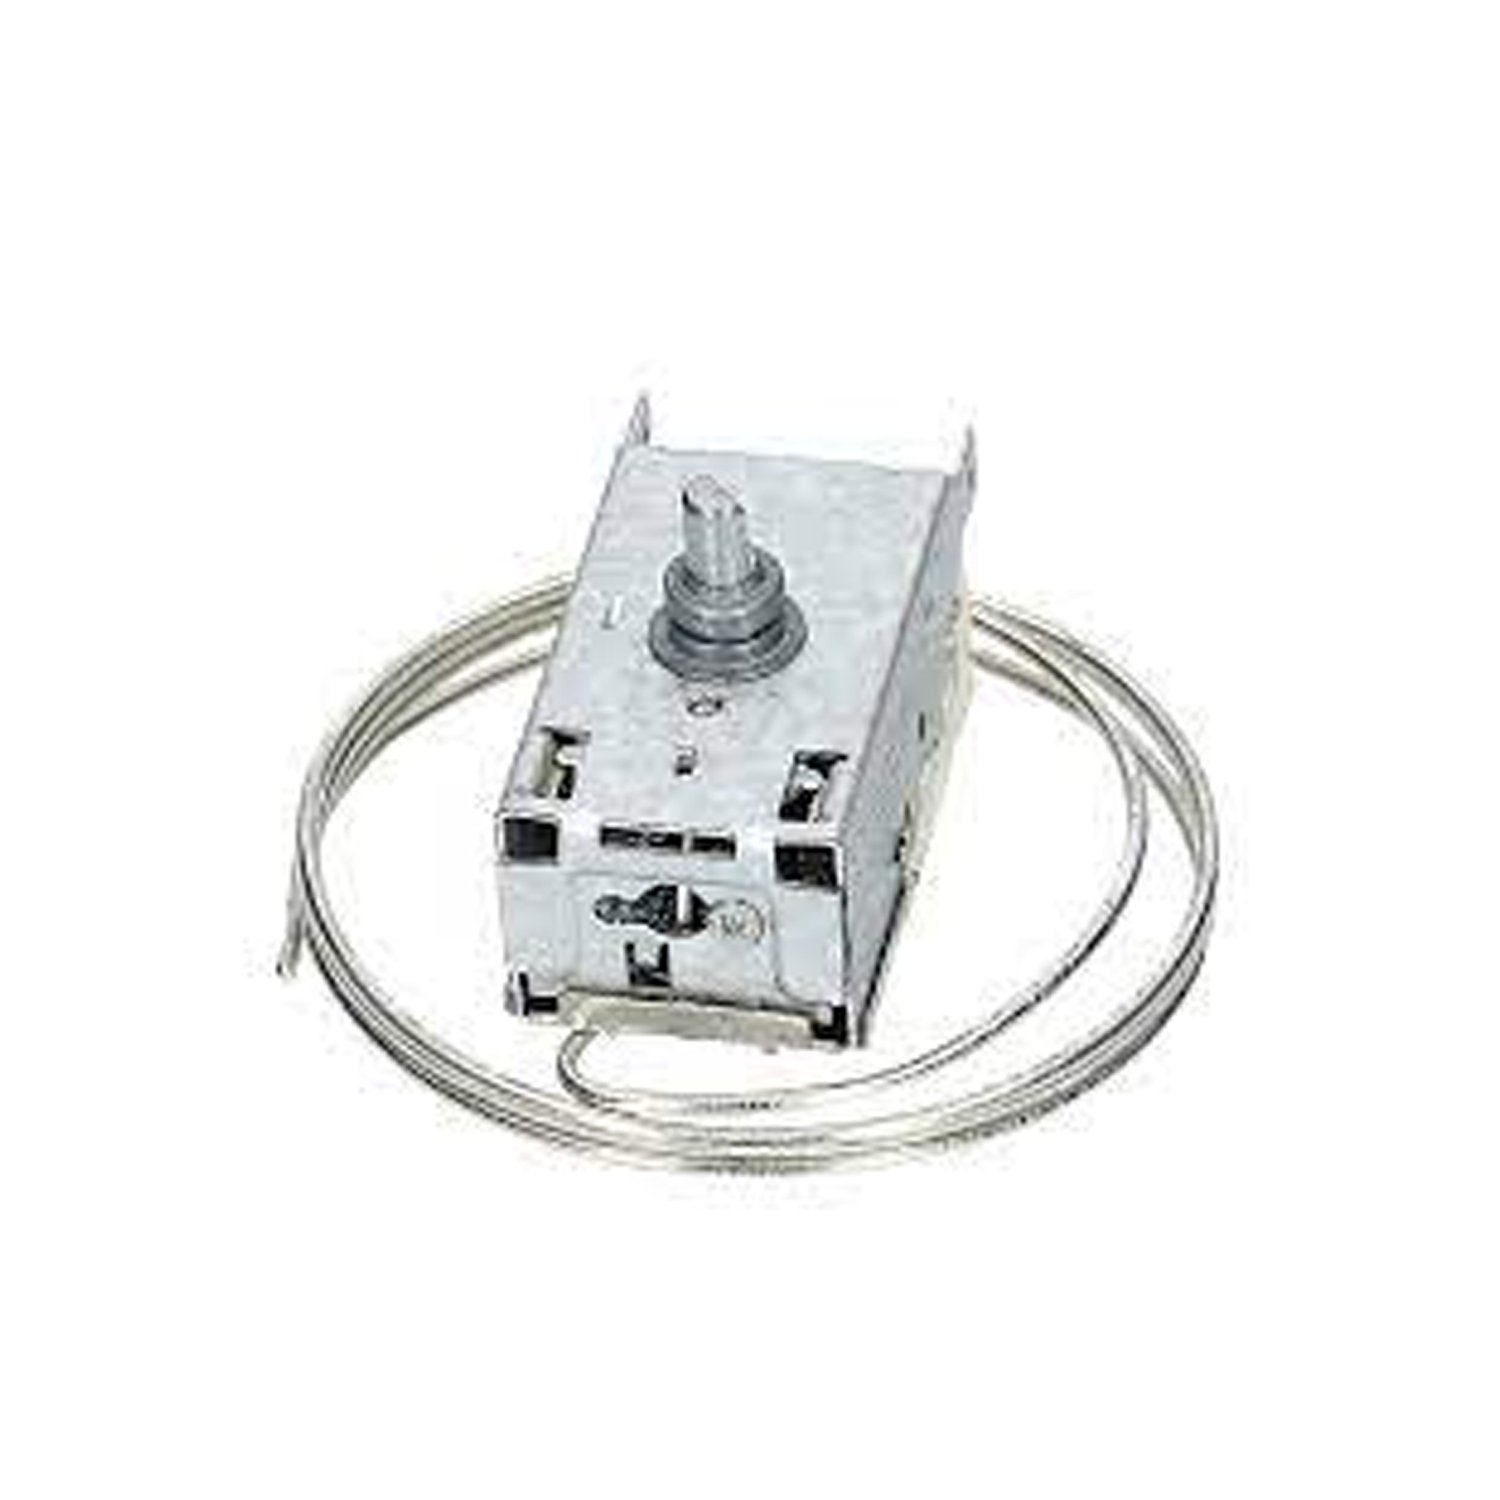 Thermostaat ATEA A13 0704 voor koelkast Whirlpool Alternatief voor Ranco K59-L1229 / 500, WHIRLPOOL 481228238179